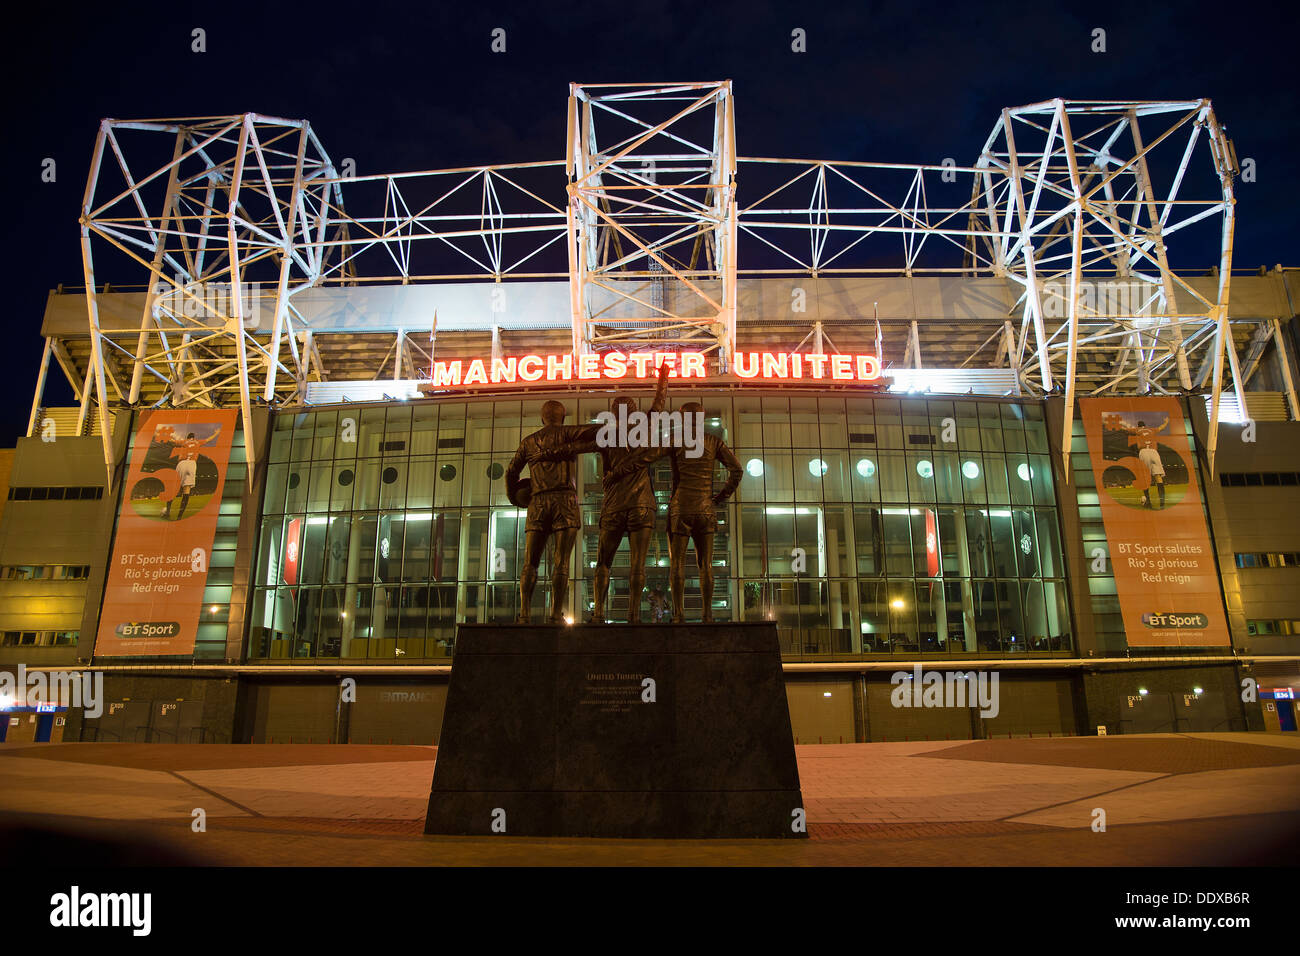 Der East Stand von Old Trafford, Manchester United Fußball-Stadion in der Nacht. Stockfoto